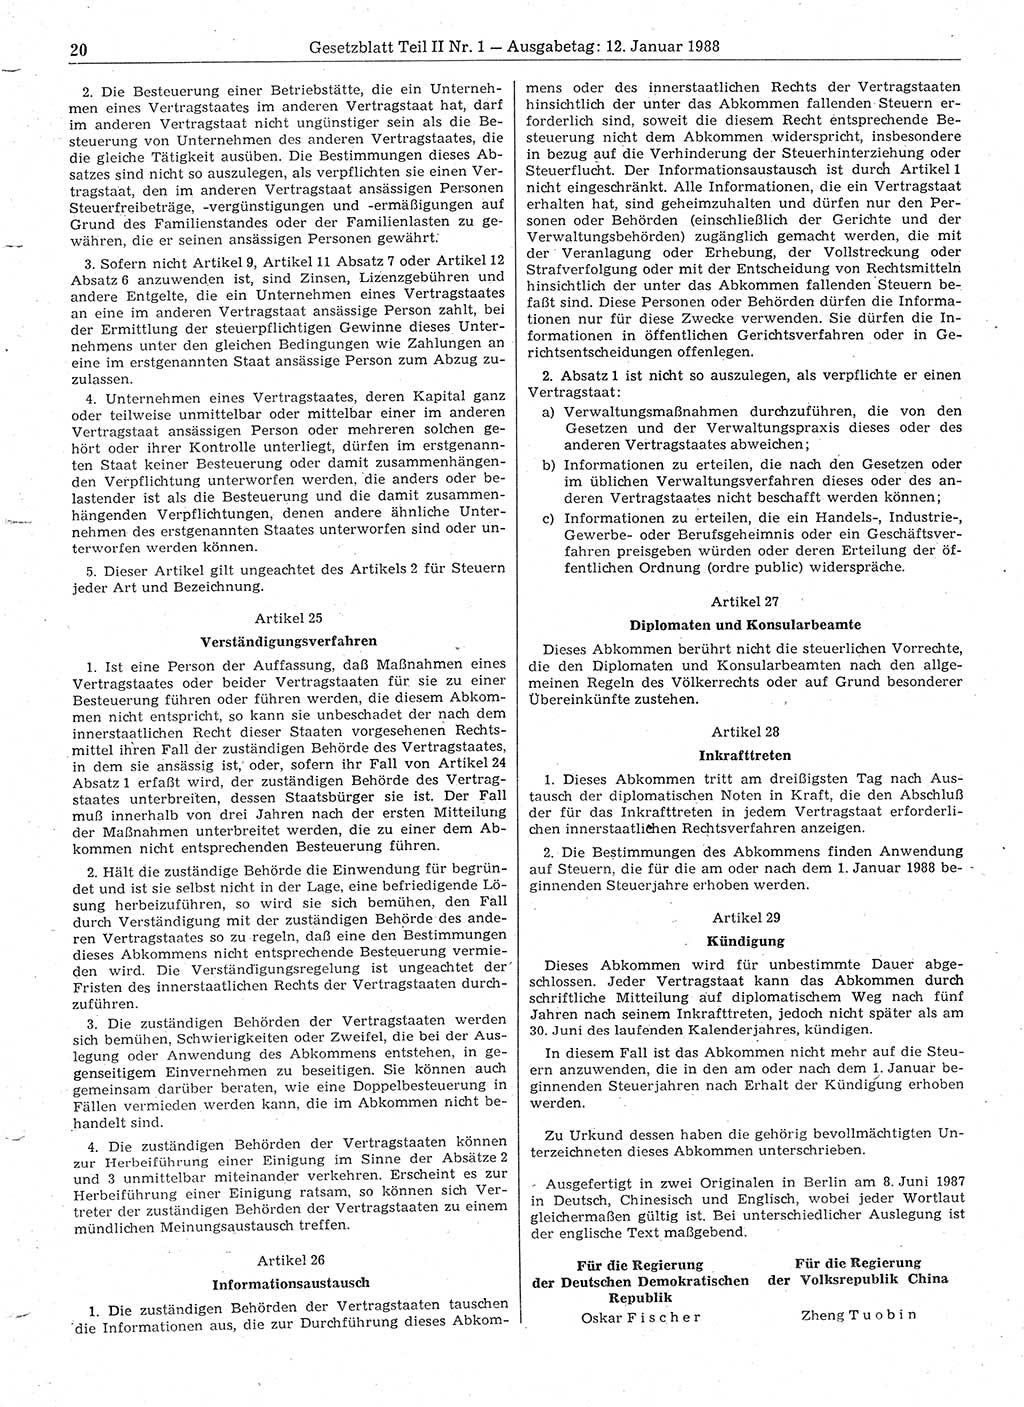 Gesetzblatt (GBl.) der Deutschen Demokratischen Republik (DDR) Teil ⅠⅠ 1988, Seite 20 (GBl. DDR ⅠⅠ 1988, S. 20)